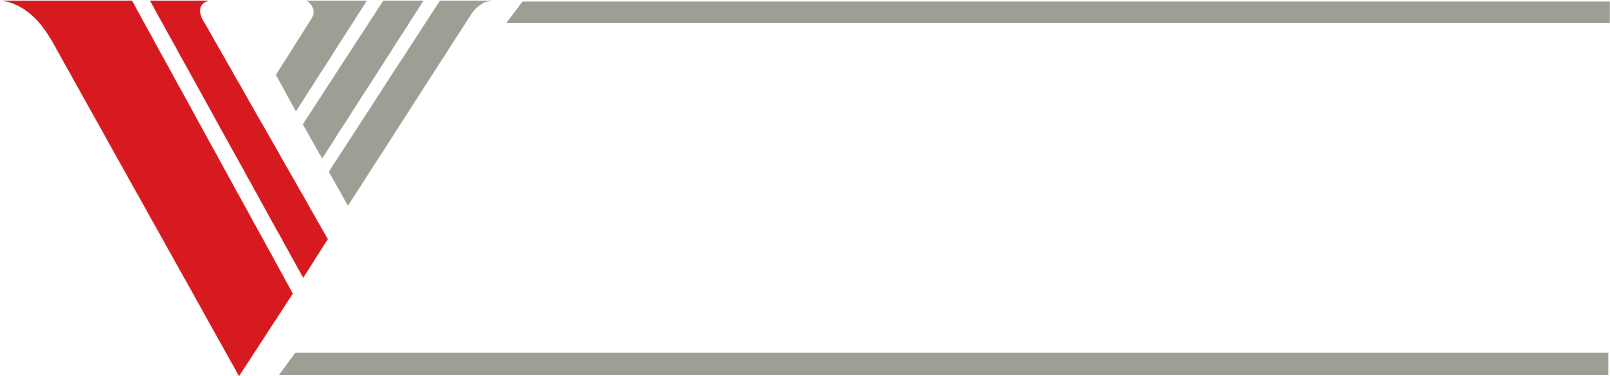 Venture Corporation logo large for dark backgrounds (transparent PNG)